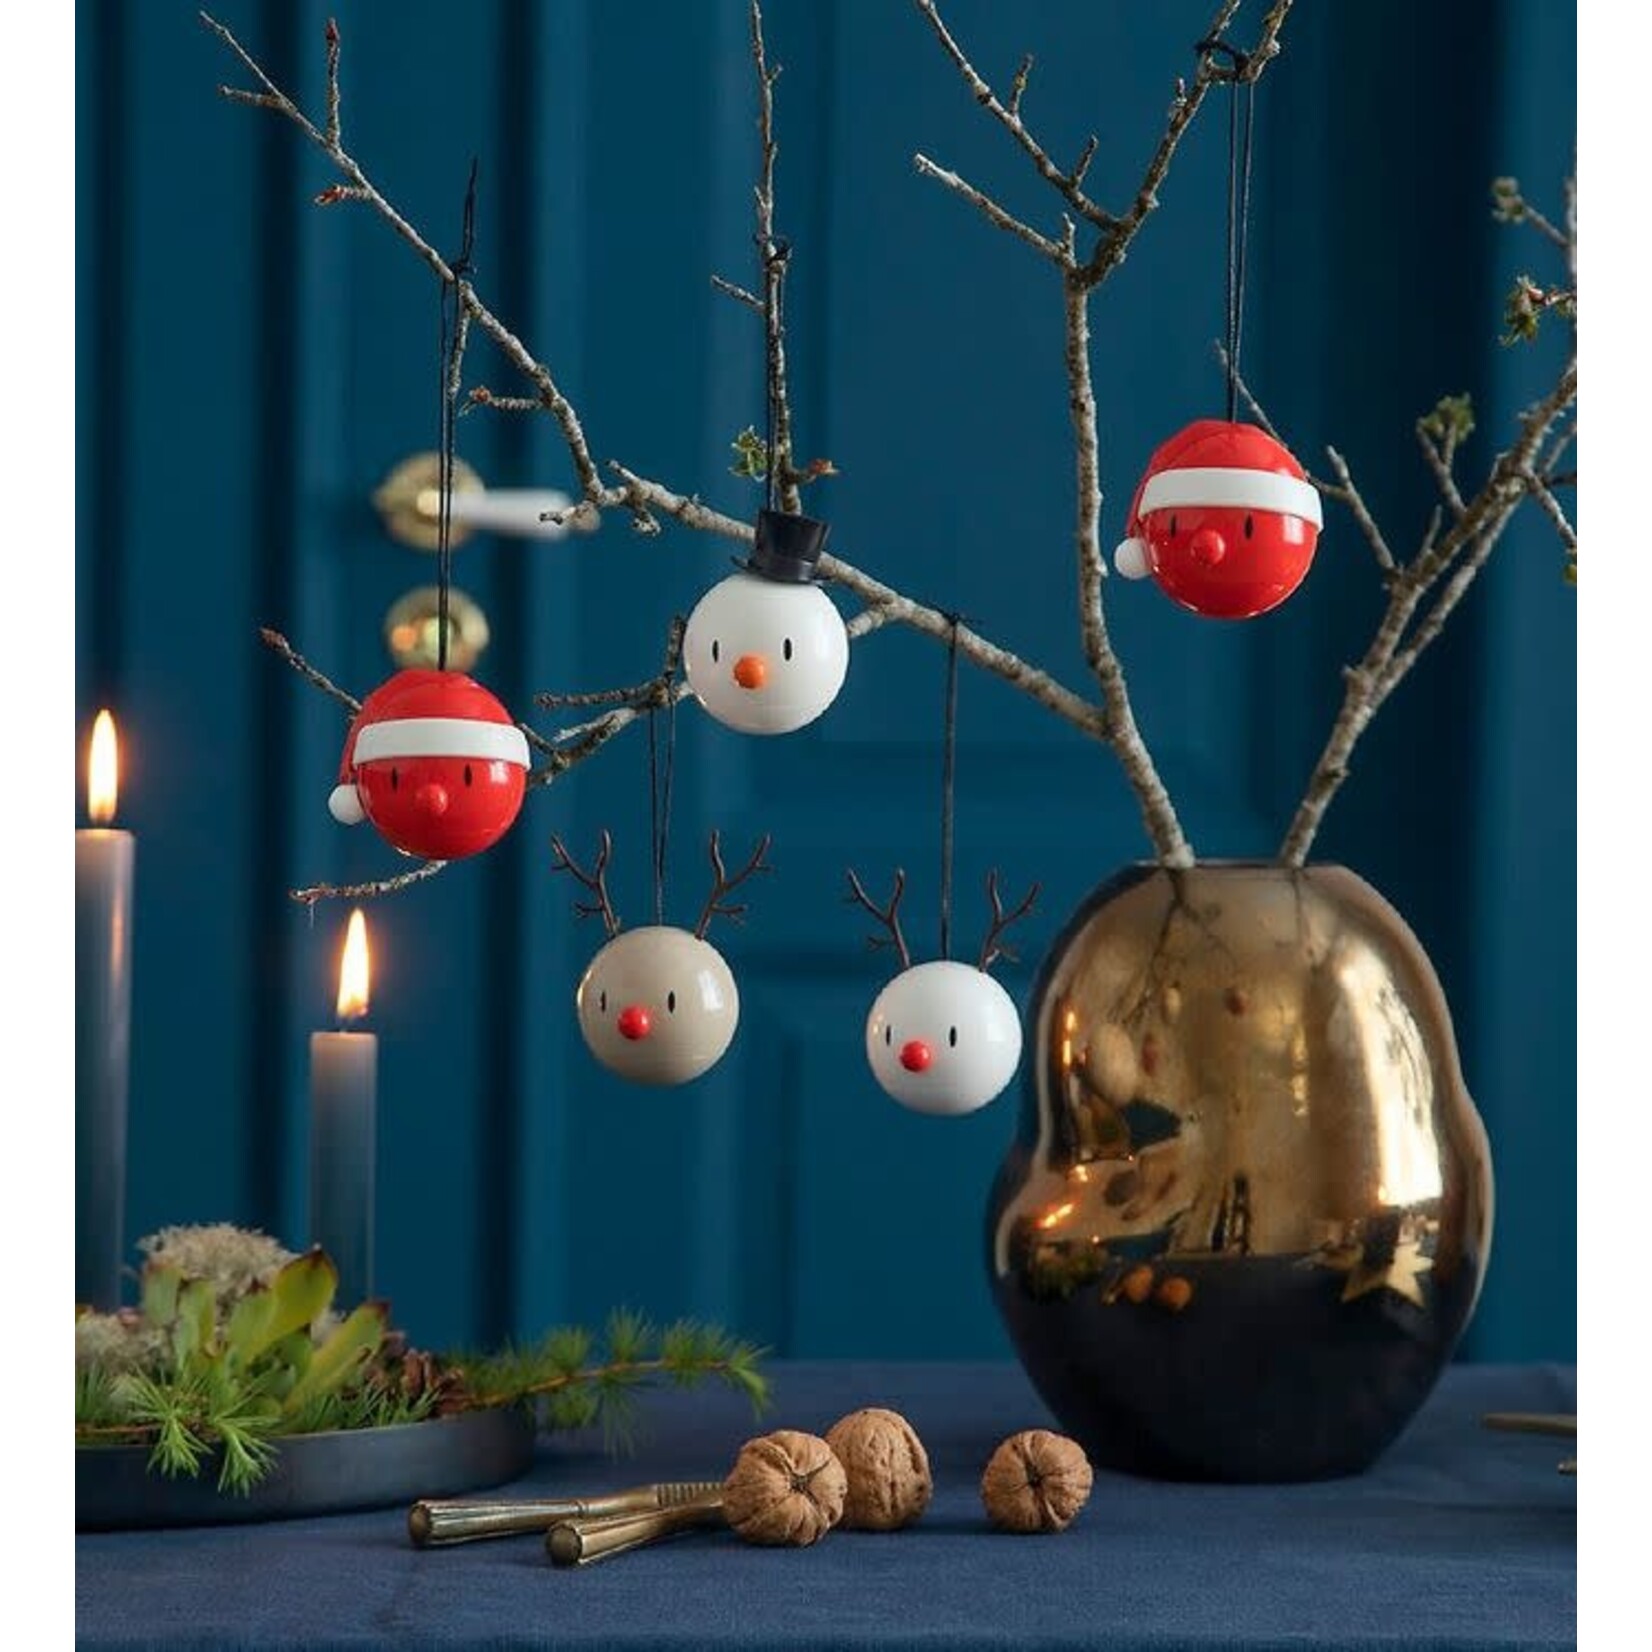 Diverse Merken 2 kerstballen Hoptimist reindeer ornament white set-2 rendier kerstballen Hoptimist 26096